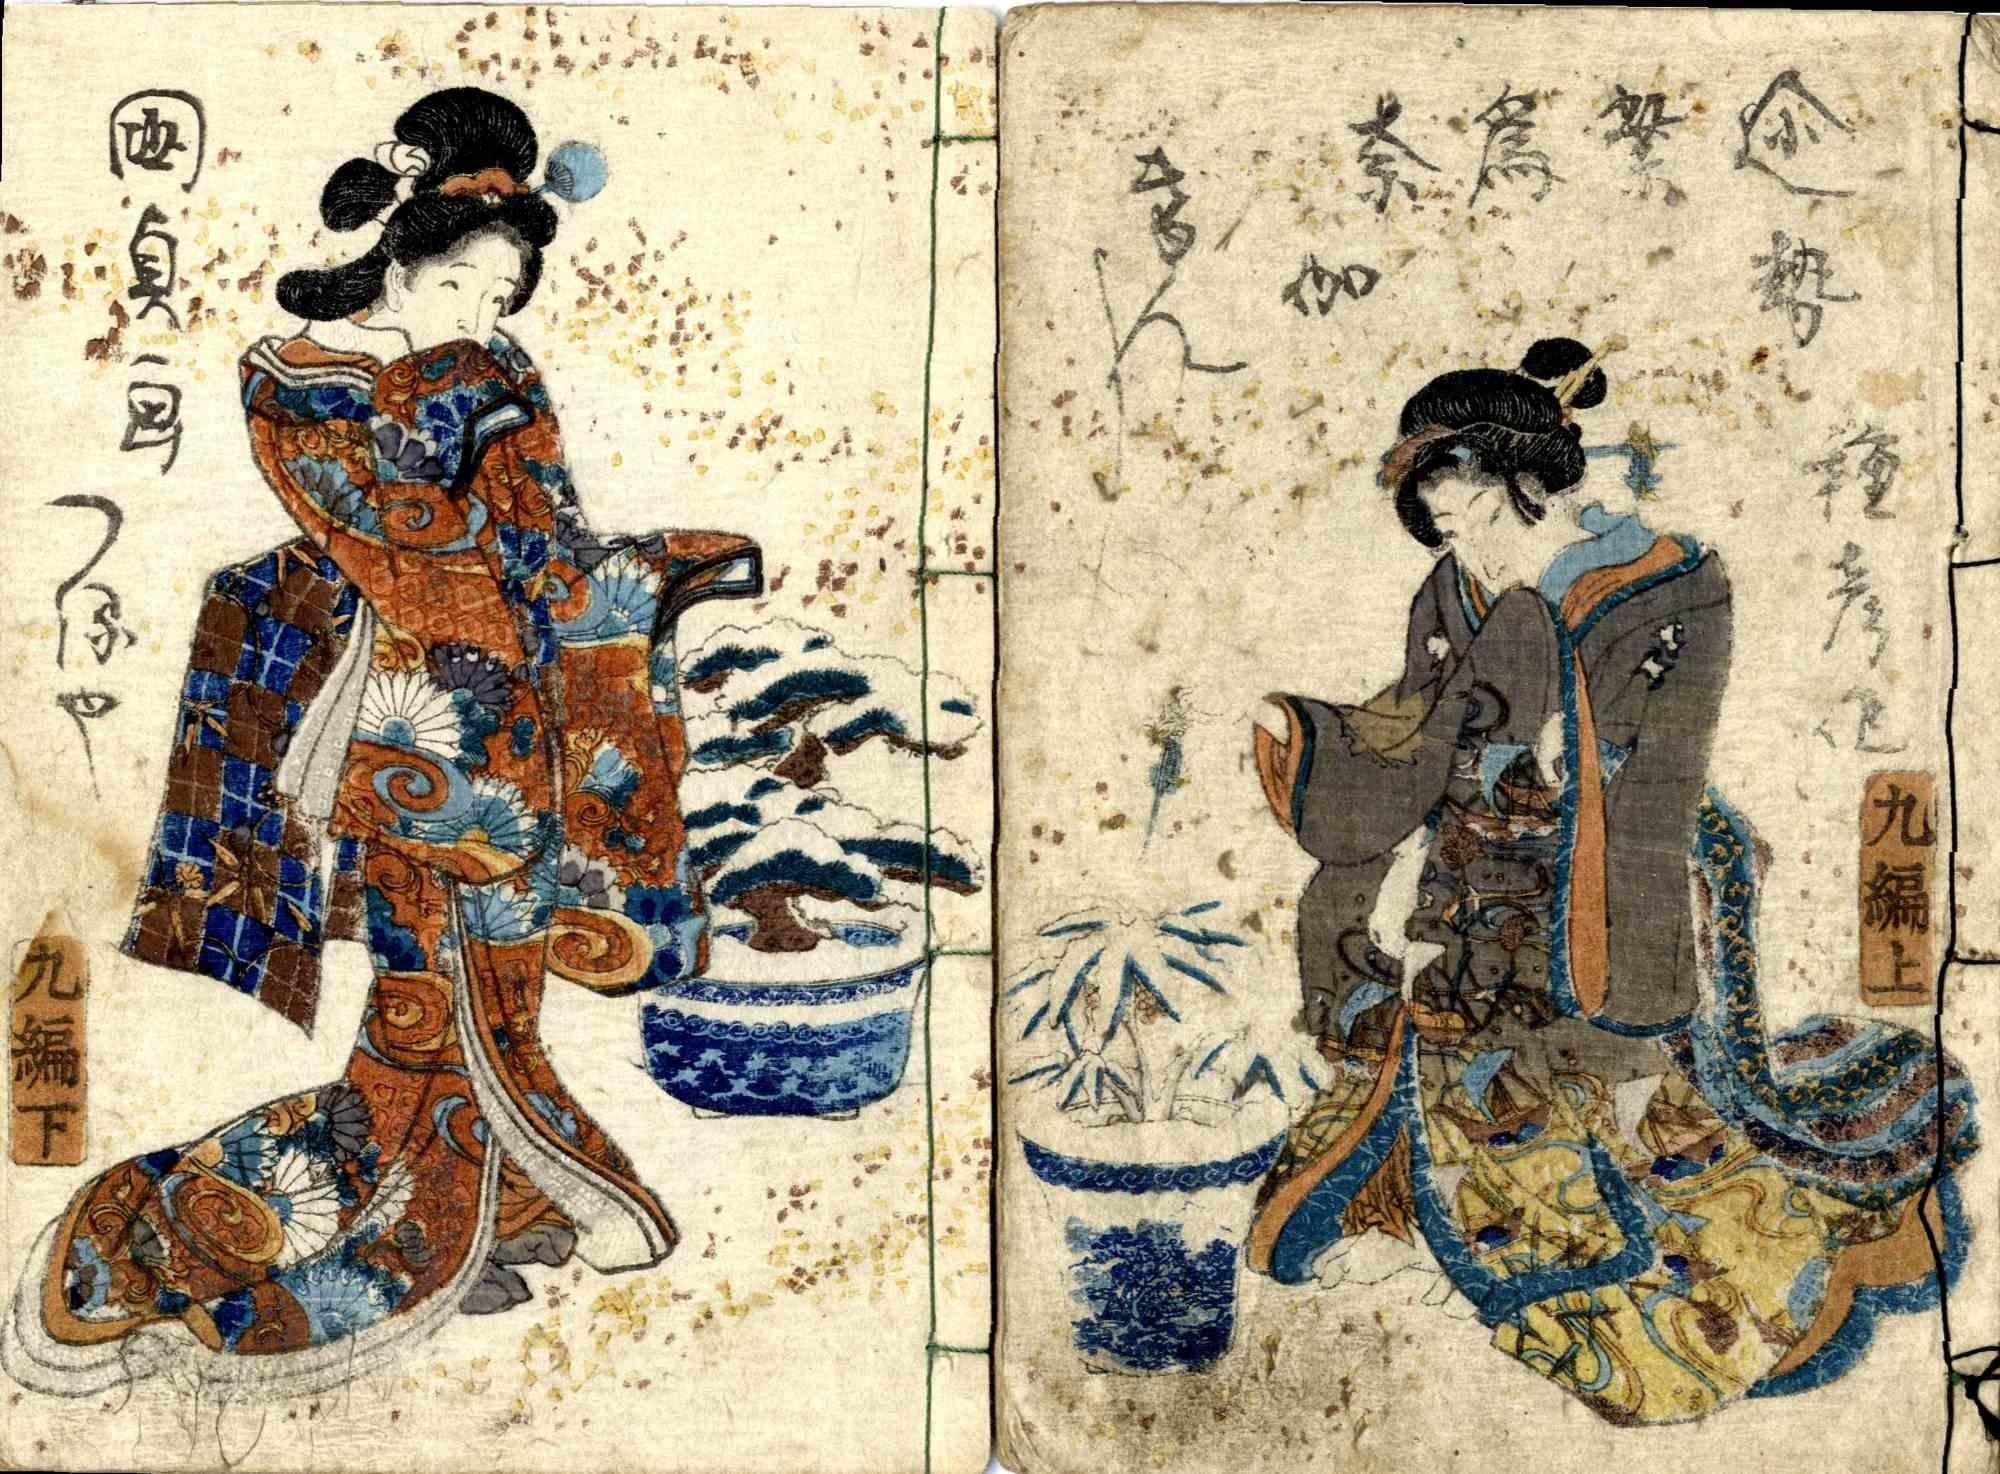 Utagawa Kunisada (Toyokuni III) Figurative Print - A Rural Genji - Woodcut by Utagawa Kunisada - 1829-1842